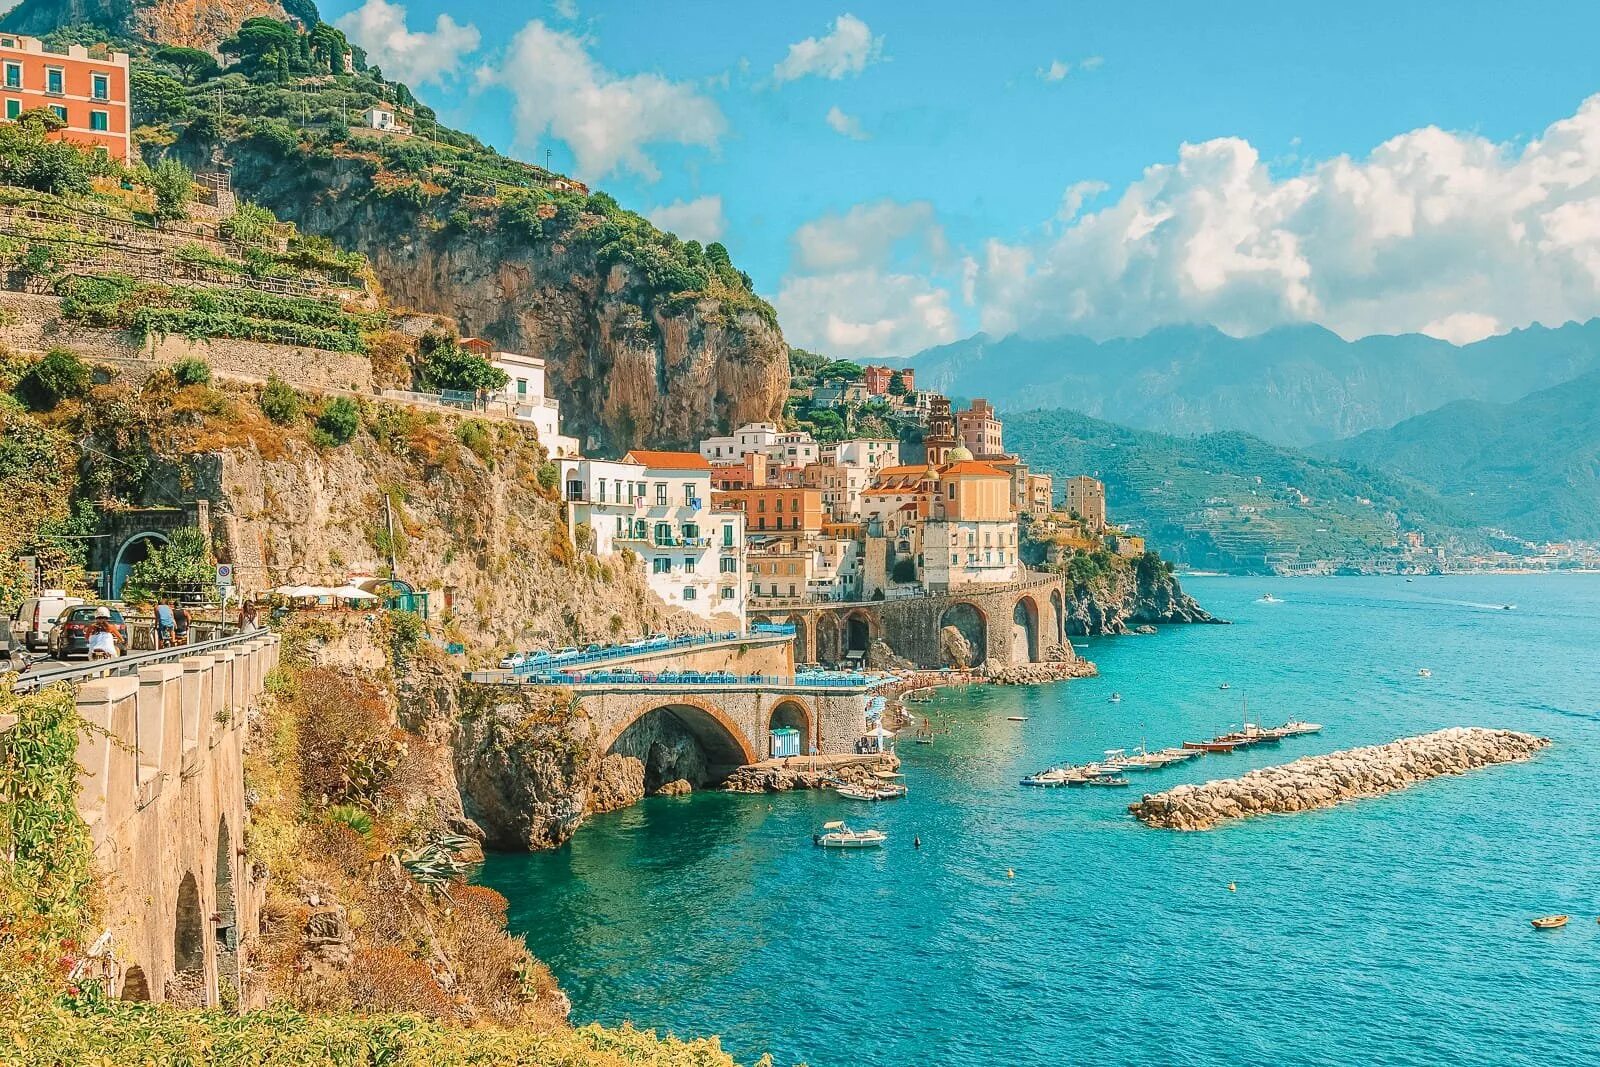 Побережье Амальфи Италия. Амальфийское побережье (Amalfi Coast), Италия. Сицилия Амальфитанское побережье. Неаполь Амальфитанское побережье. Италия южная страна